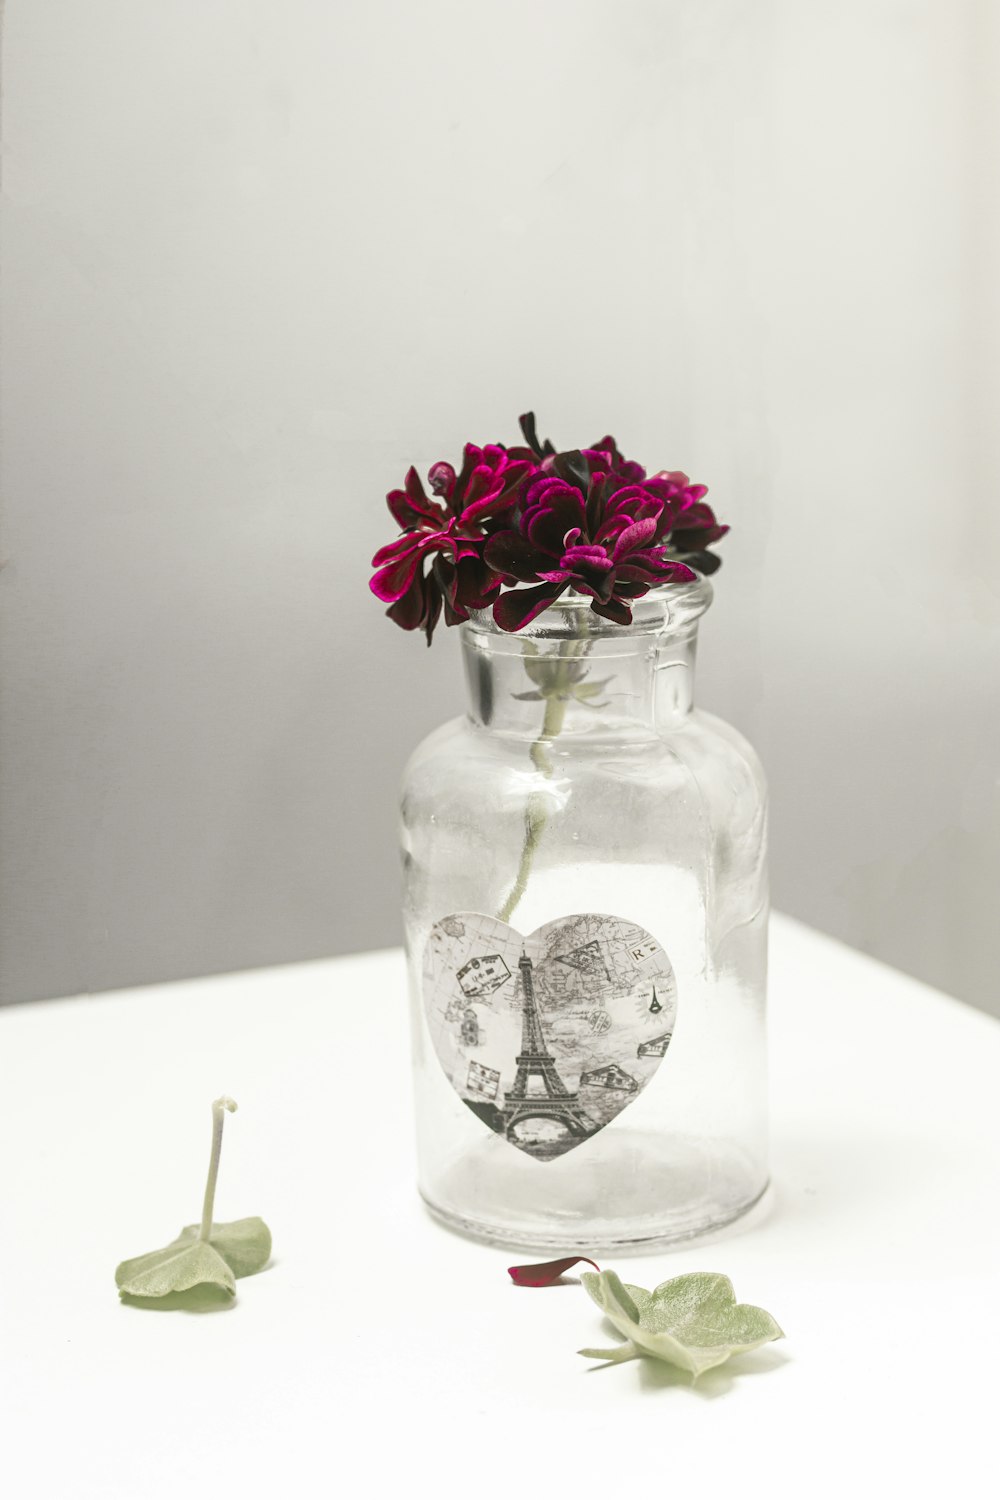 purple flower in clear glass jar